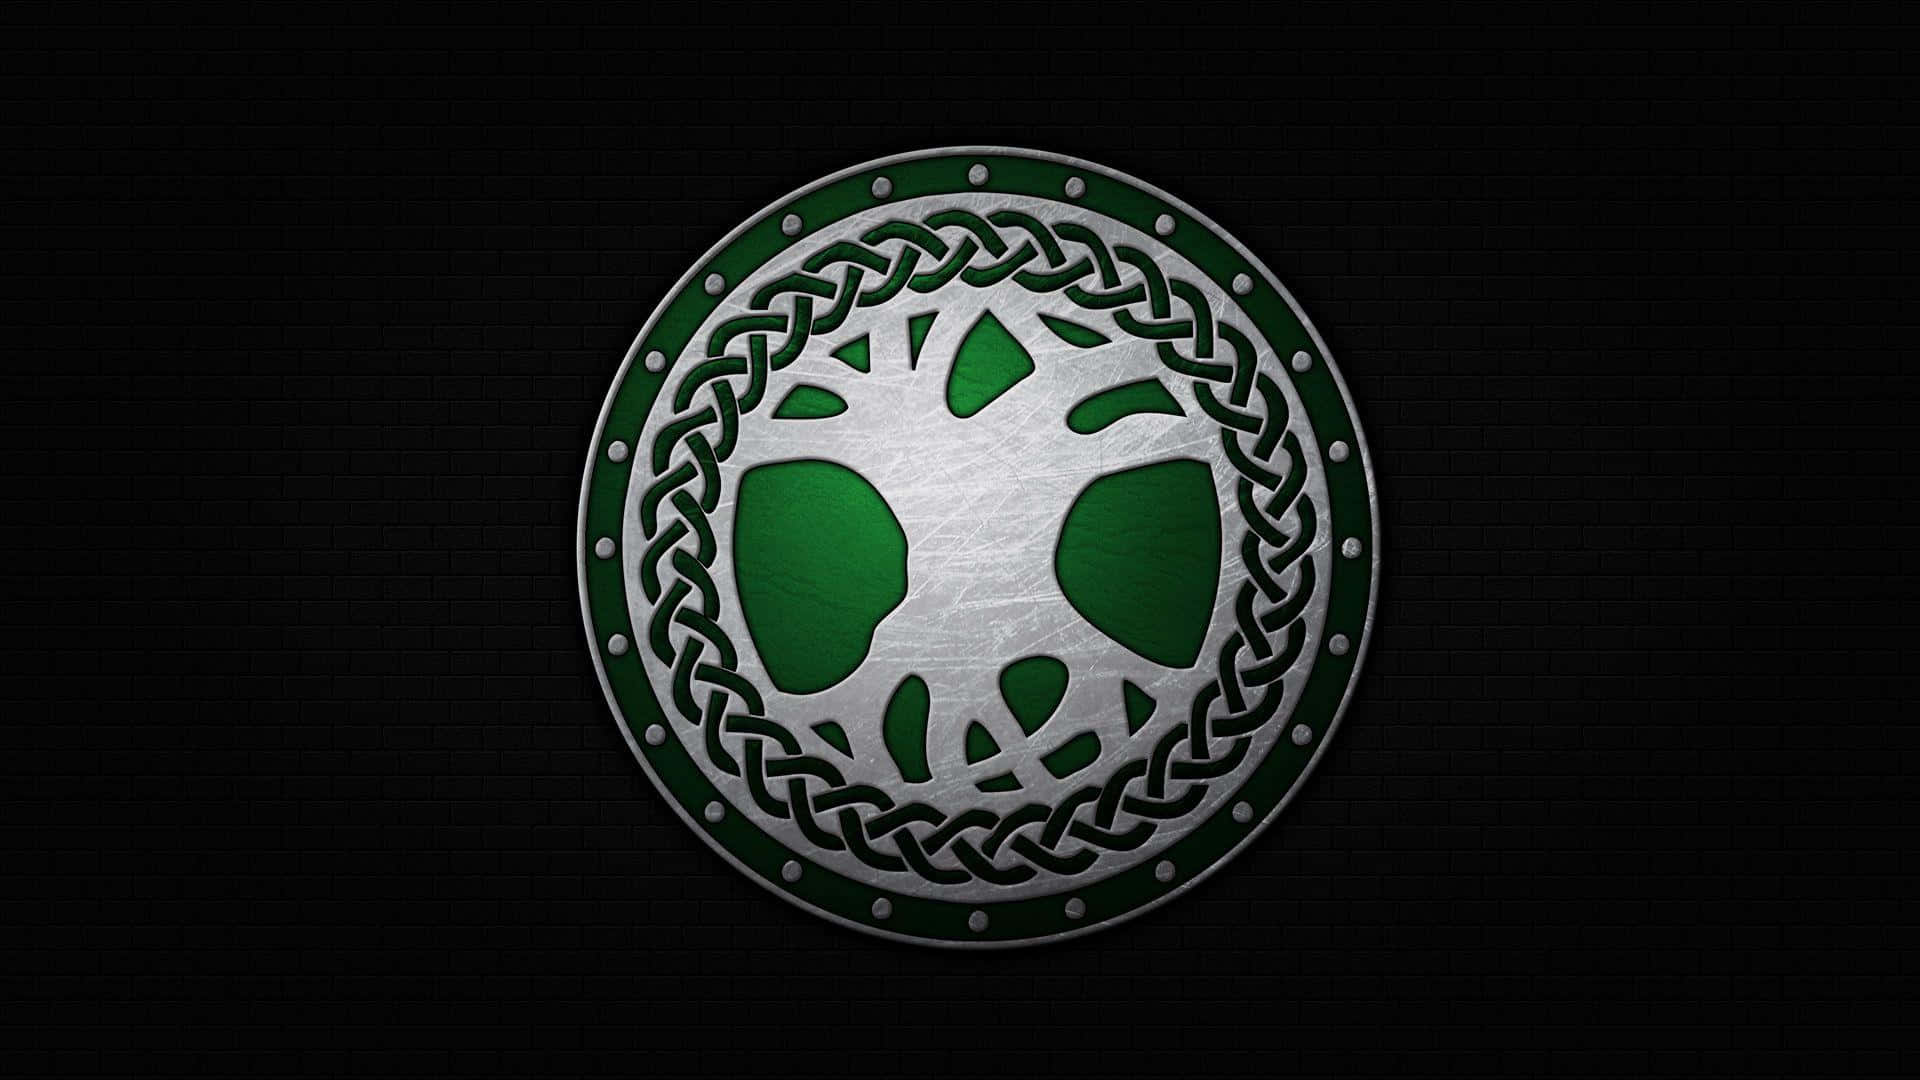 Keltiskesymboler I Naturen.